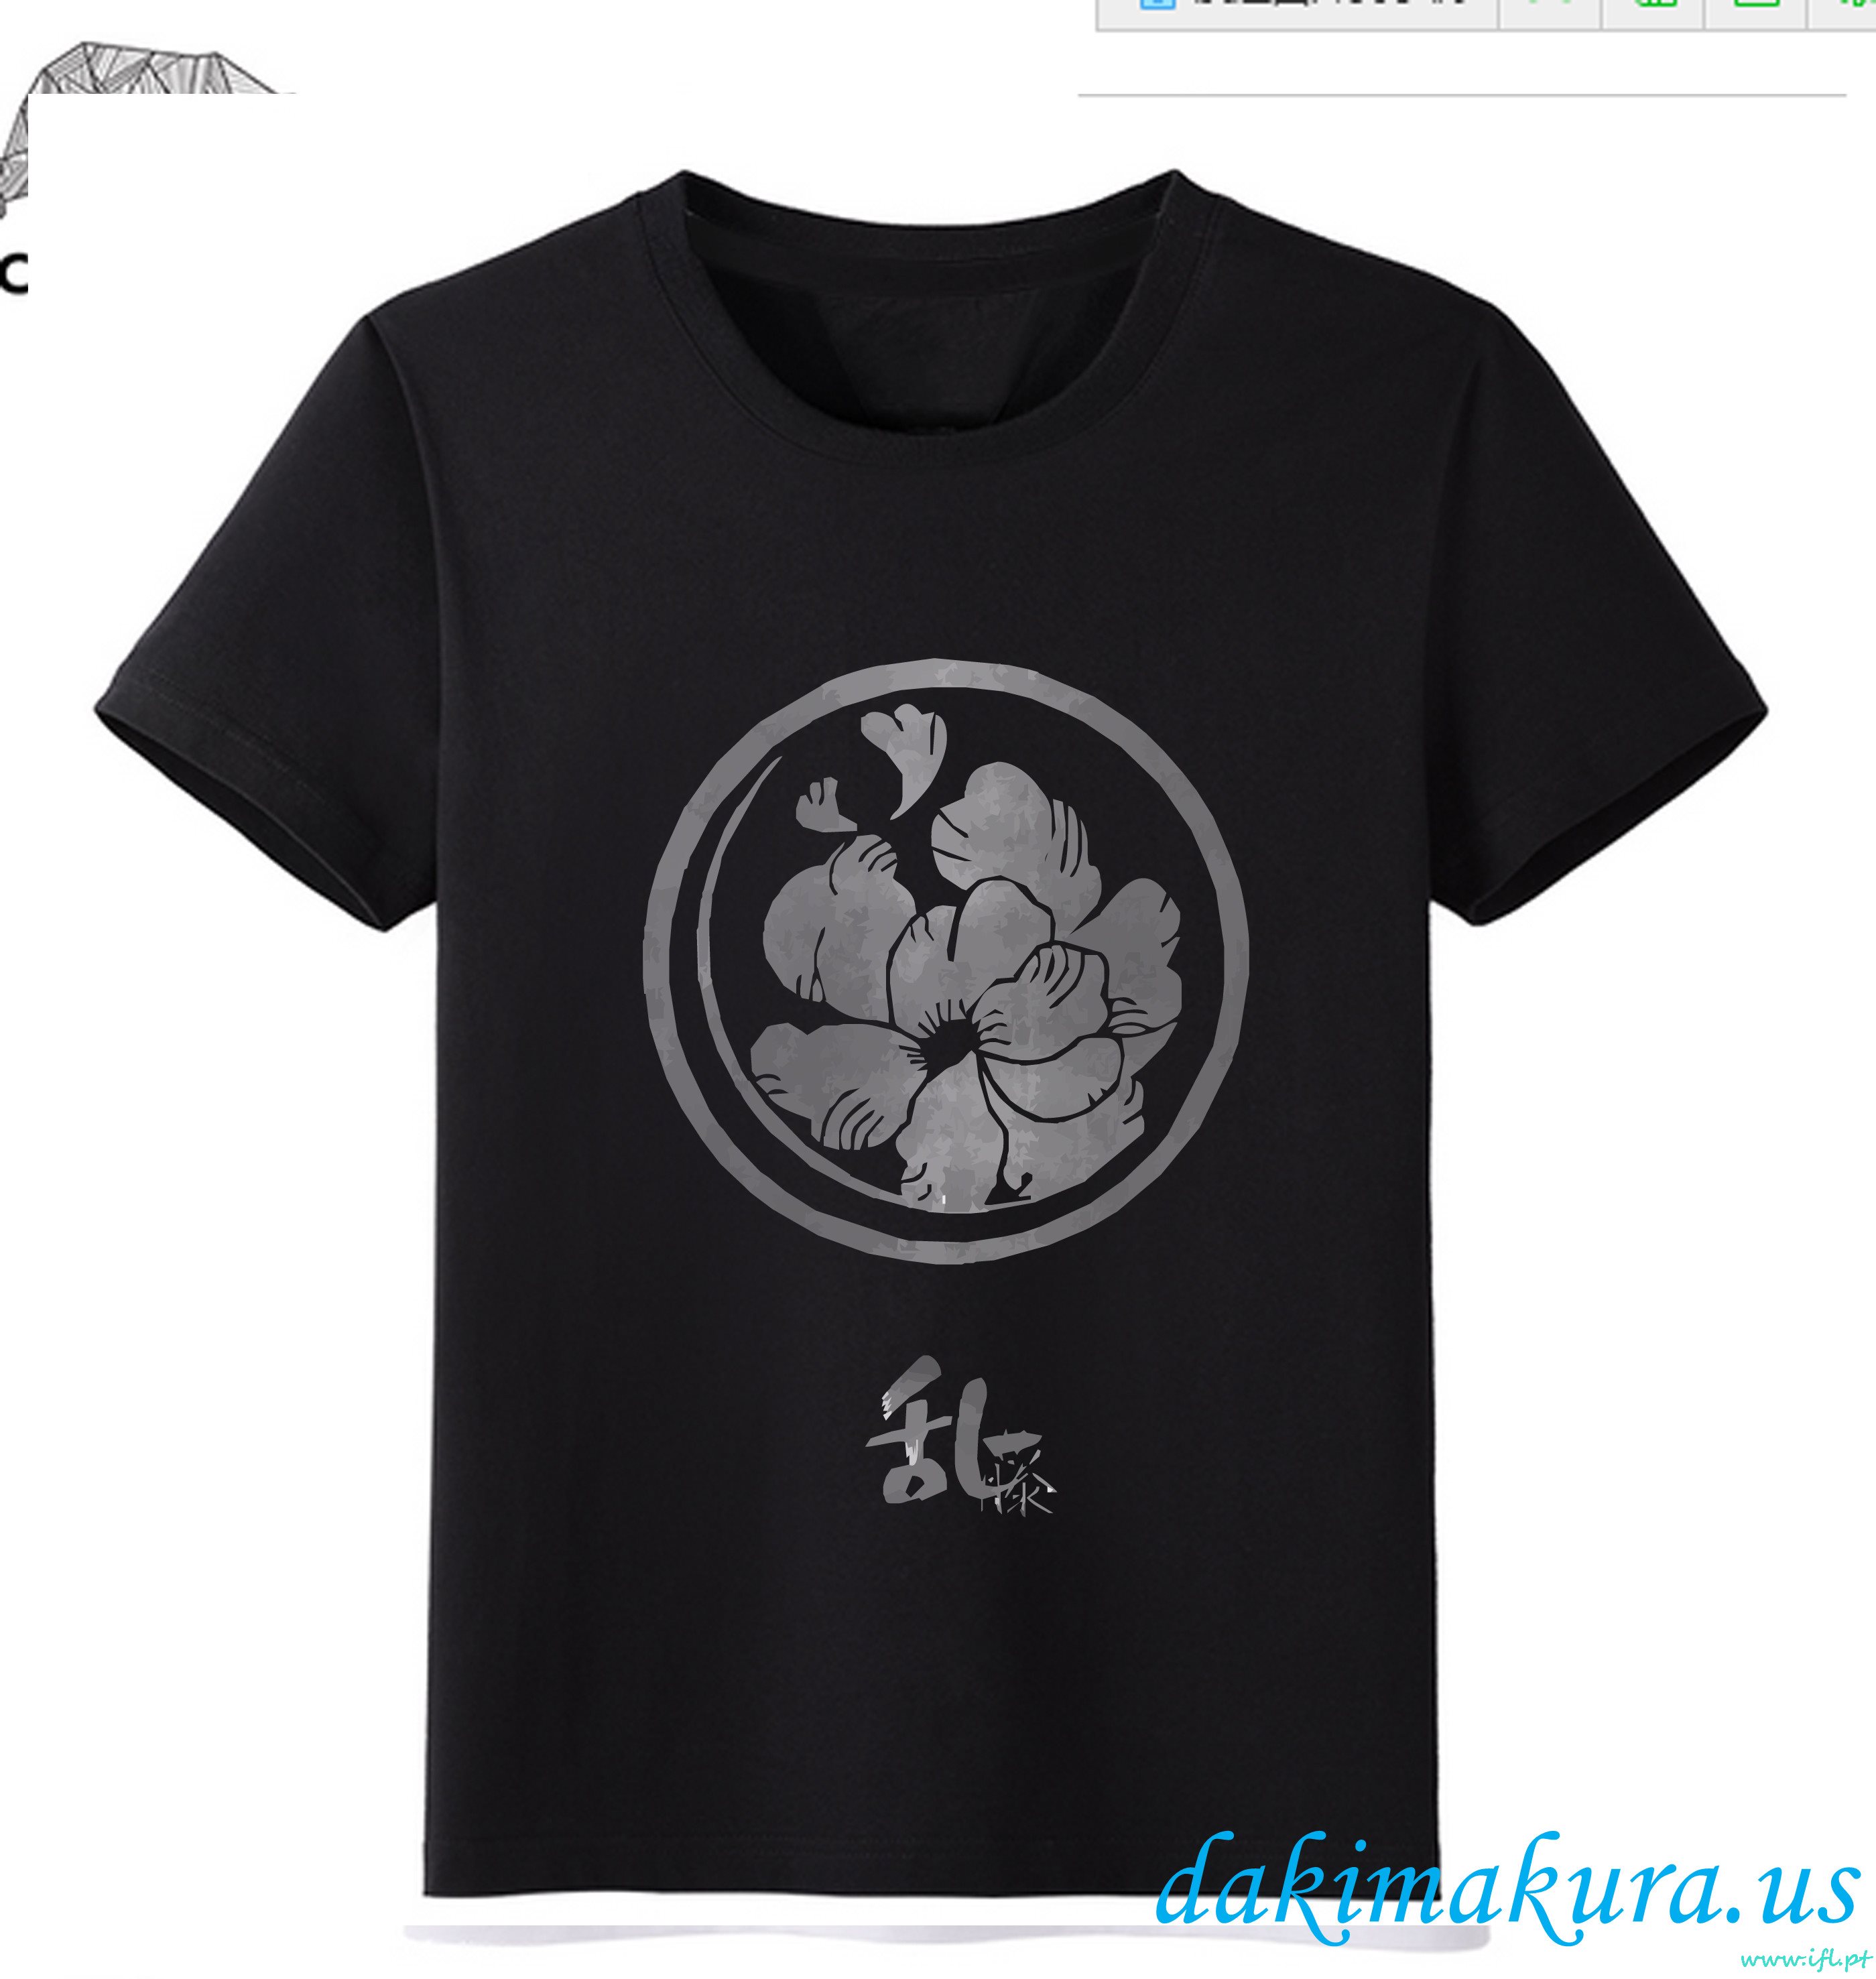 евтини Black - Touken Ranbu онлайн мъже аниме модни тениски от Китай фабрика